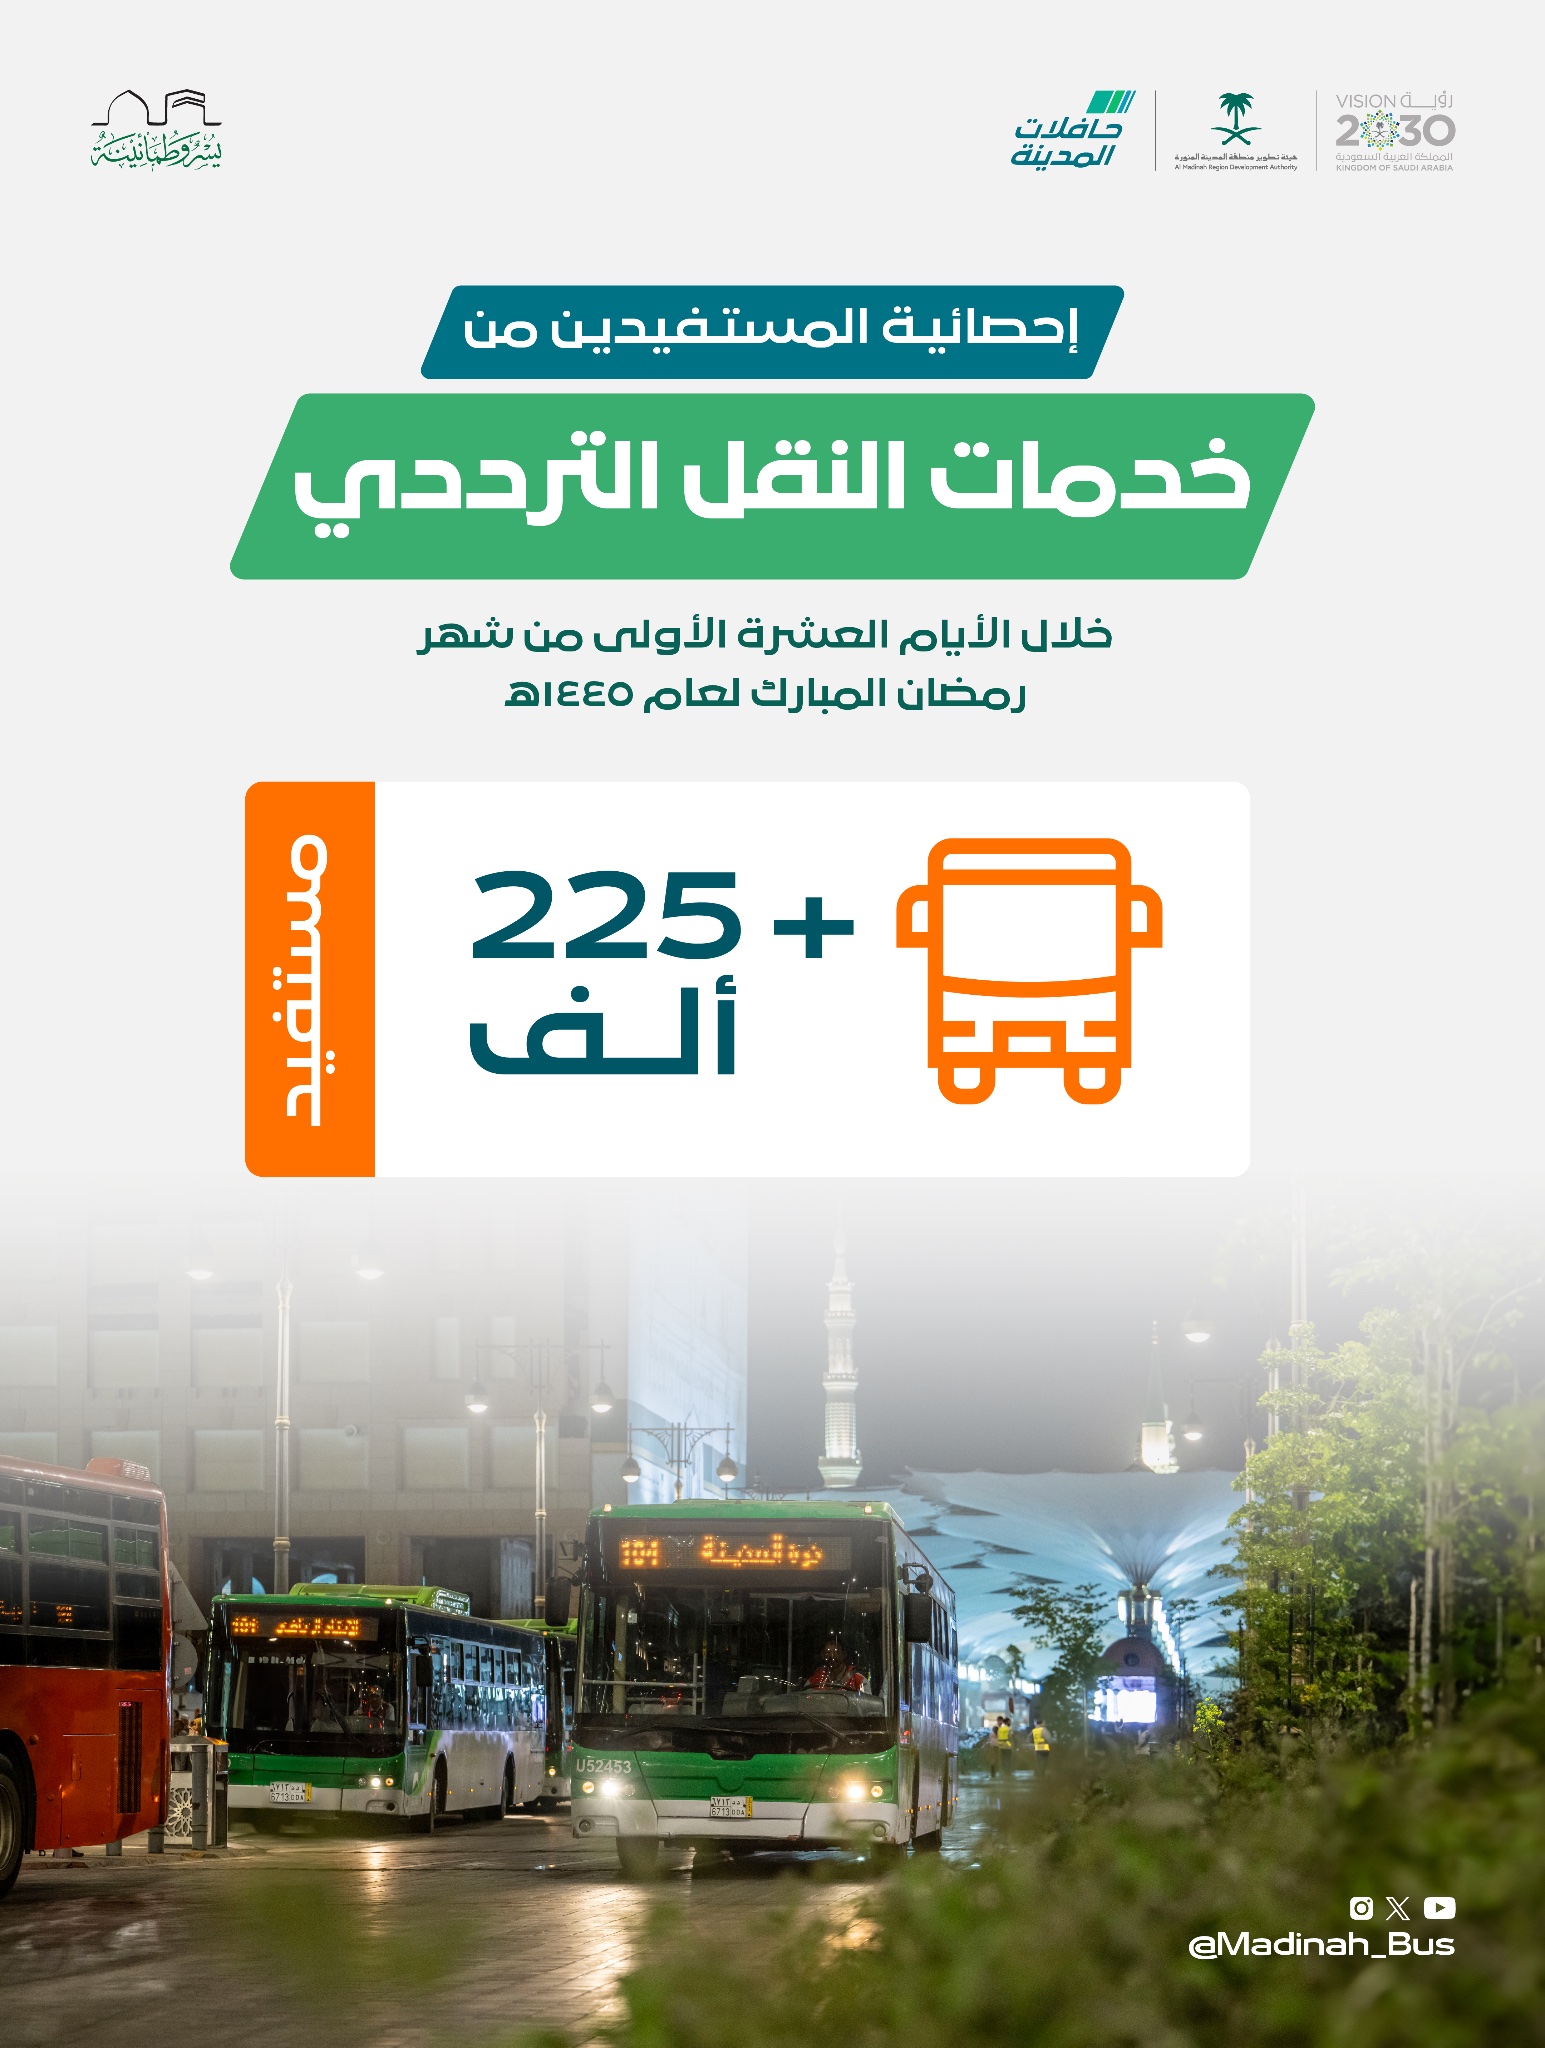 أكثر من 250 ألف مستفيد من خدمات مشروع حافلات المدينة خلال الثلث الأول من شهر رمضان